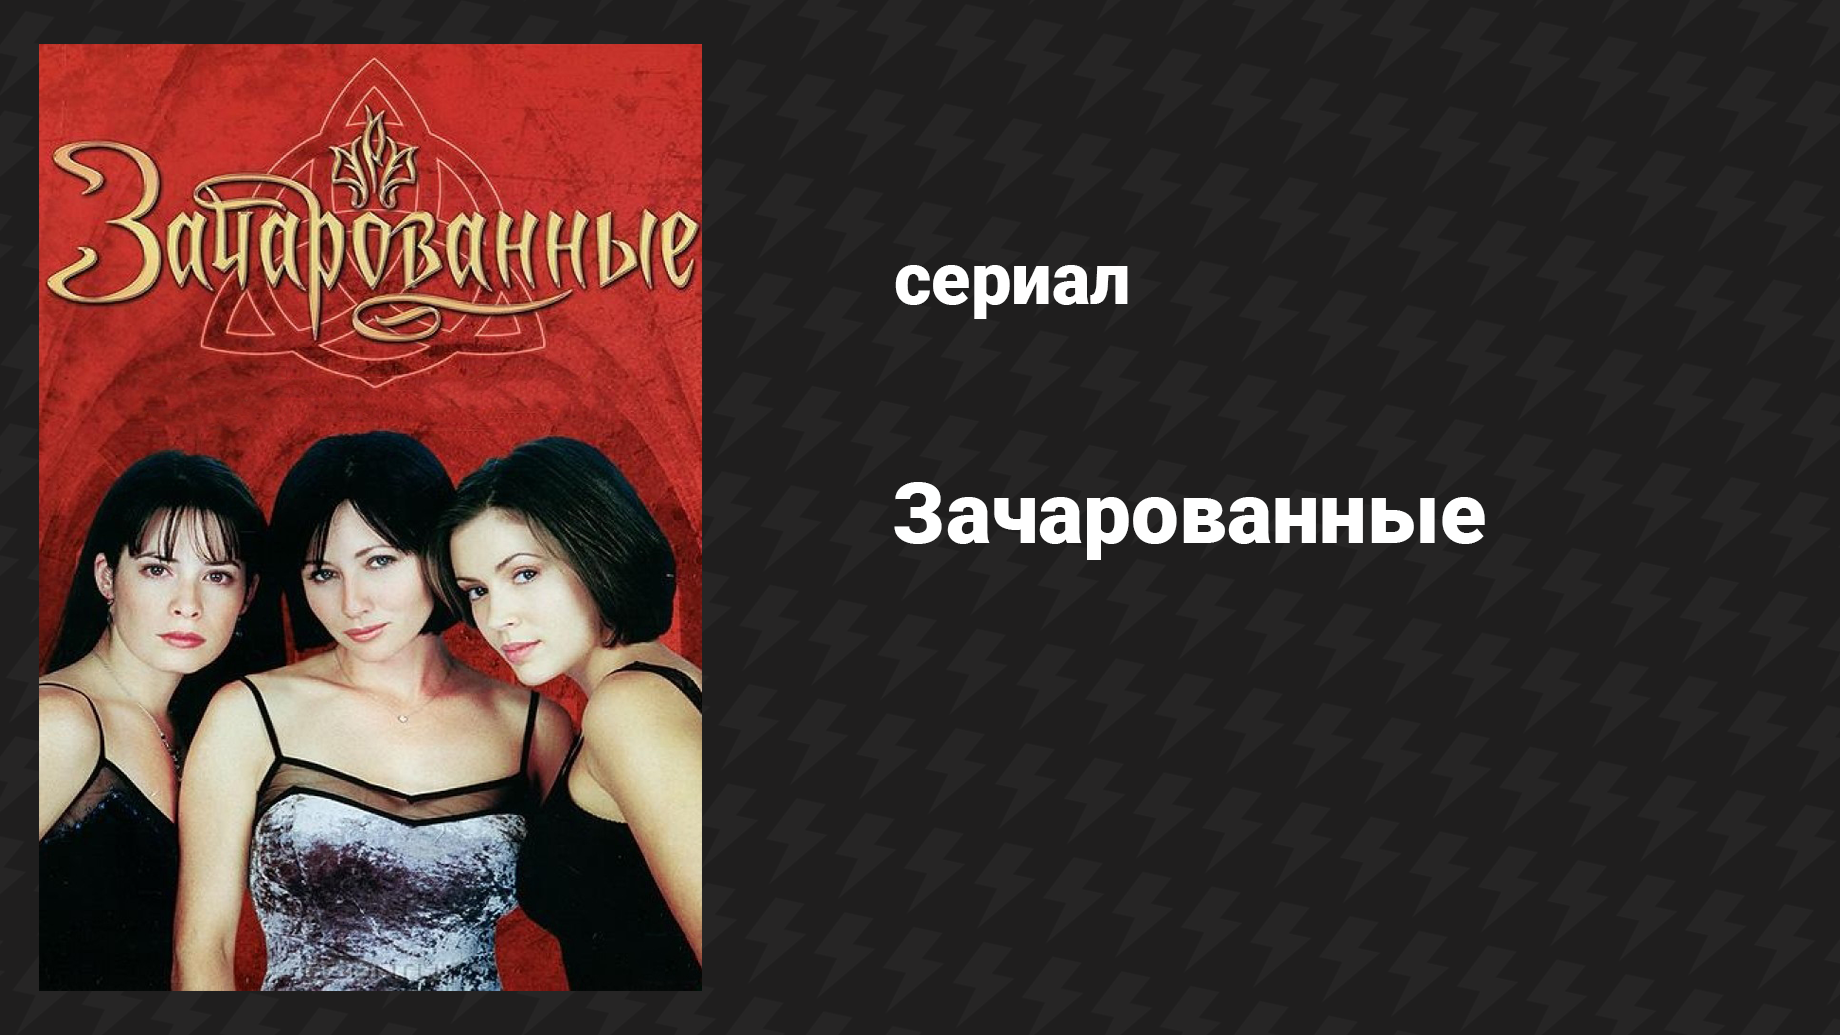 Зачарованные 1 сезон 13 серия «От страха к вечности» (сериал, 1999)